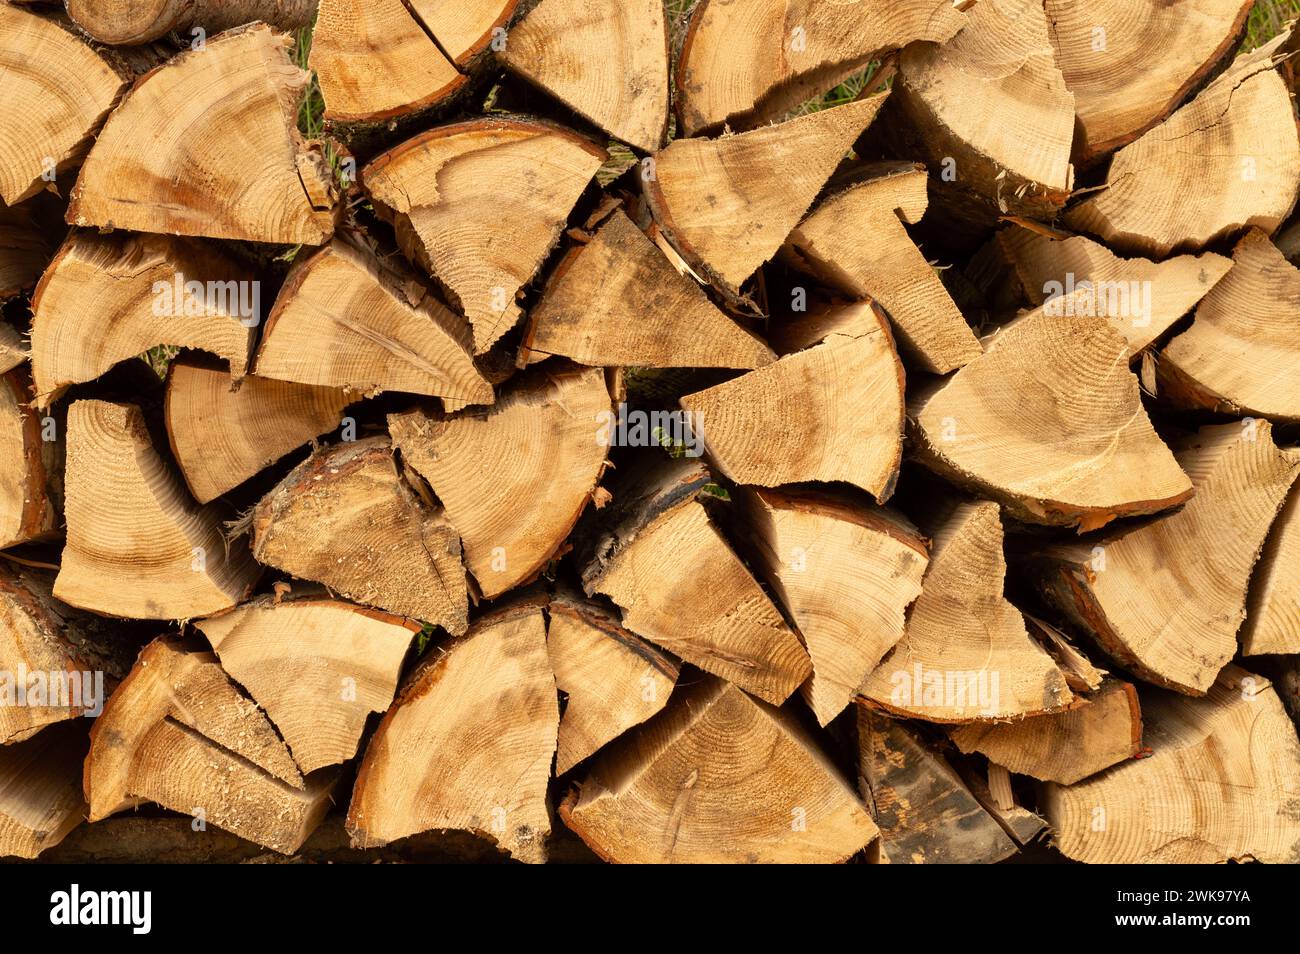 Pila de madera. Troncos de madera recién cortados apilados en el bosque. Leña, daño ambiental, temas ecológicos, deforestación, energía alternativa, lubbe Foto de stock